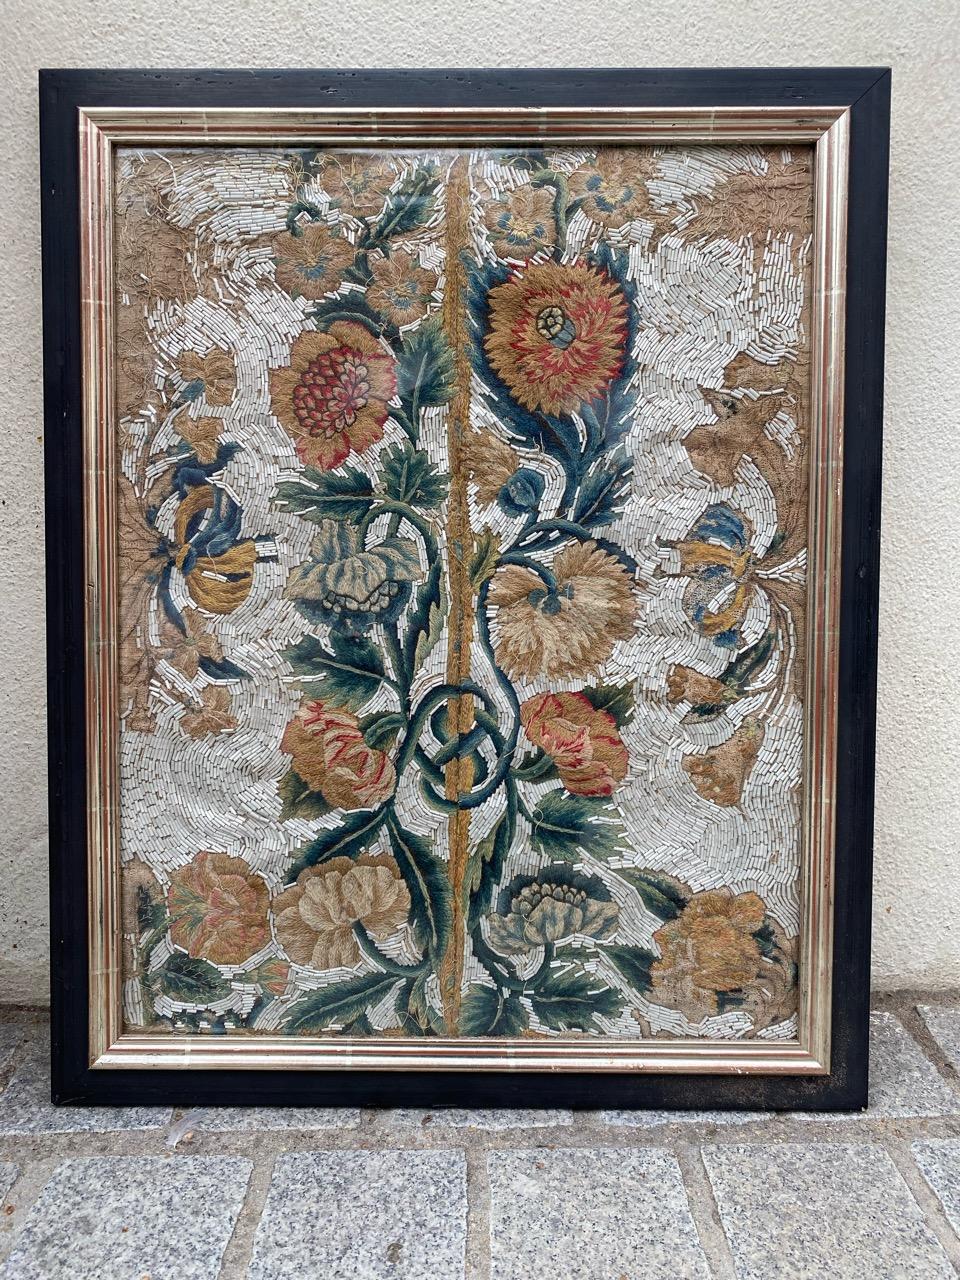 Sehr schöne und seltene antike Stickerei wahrscheinlich französisch, aus dem 17. Jahrhundert, mit floralem Muster und schönen natürlichen Farben, mit Wolle gestickt, 

Maße mit Rahmen: 45 x 56 cm
Nur Stickerei : 37 x 48 cm.

✨✨✨
